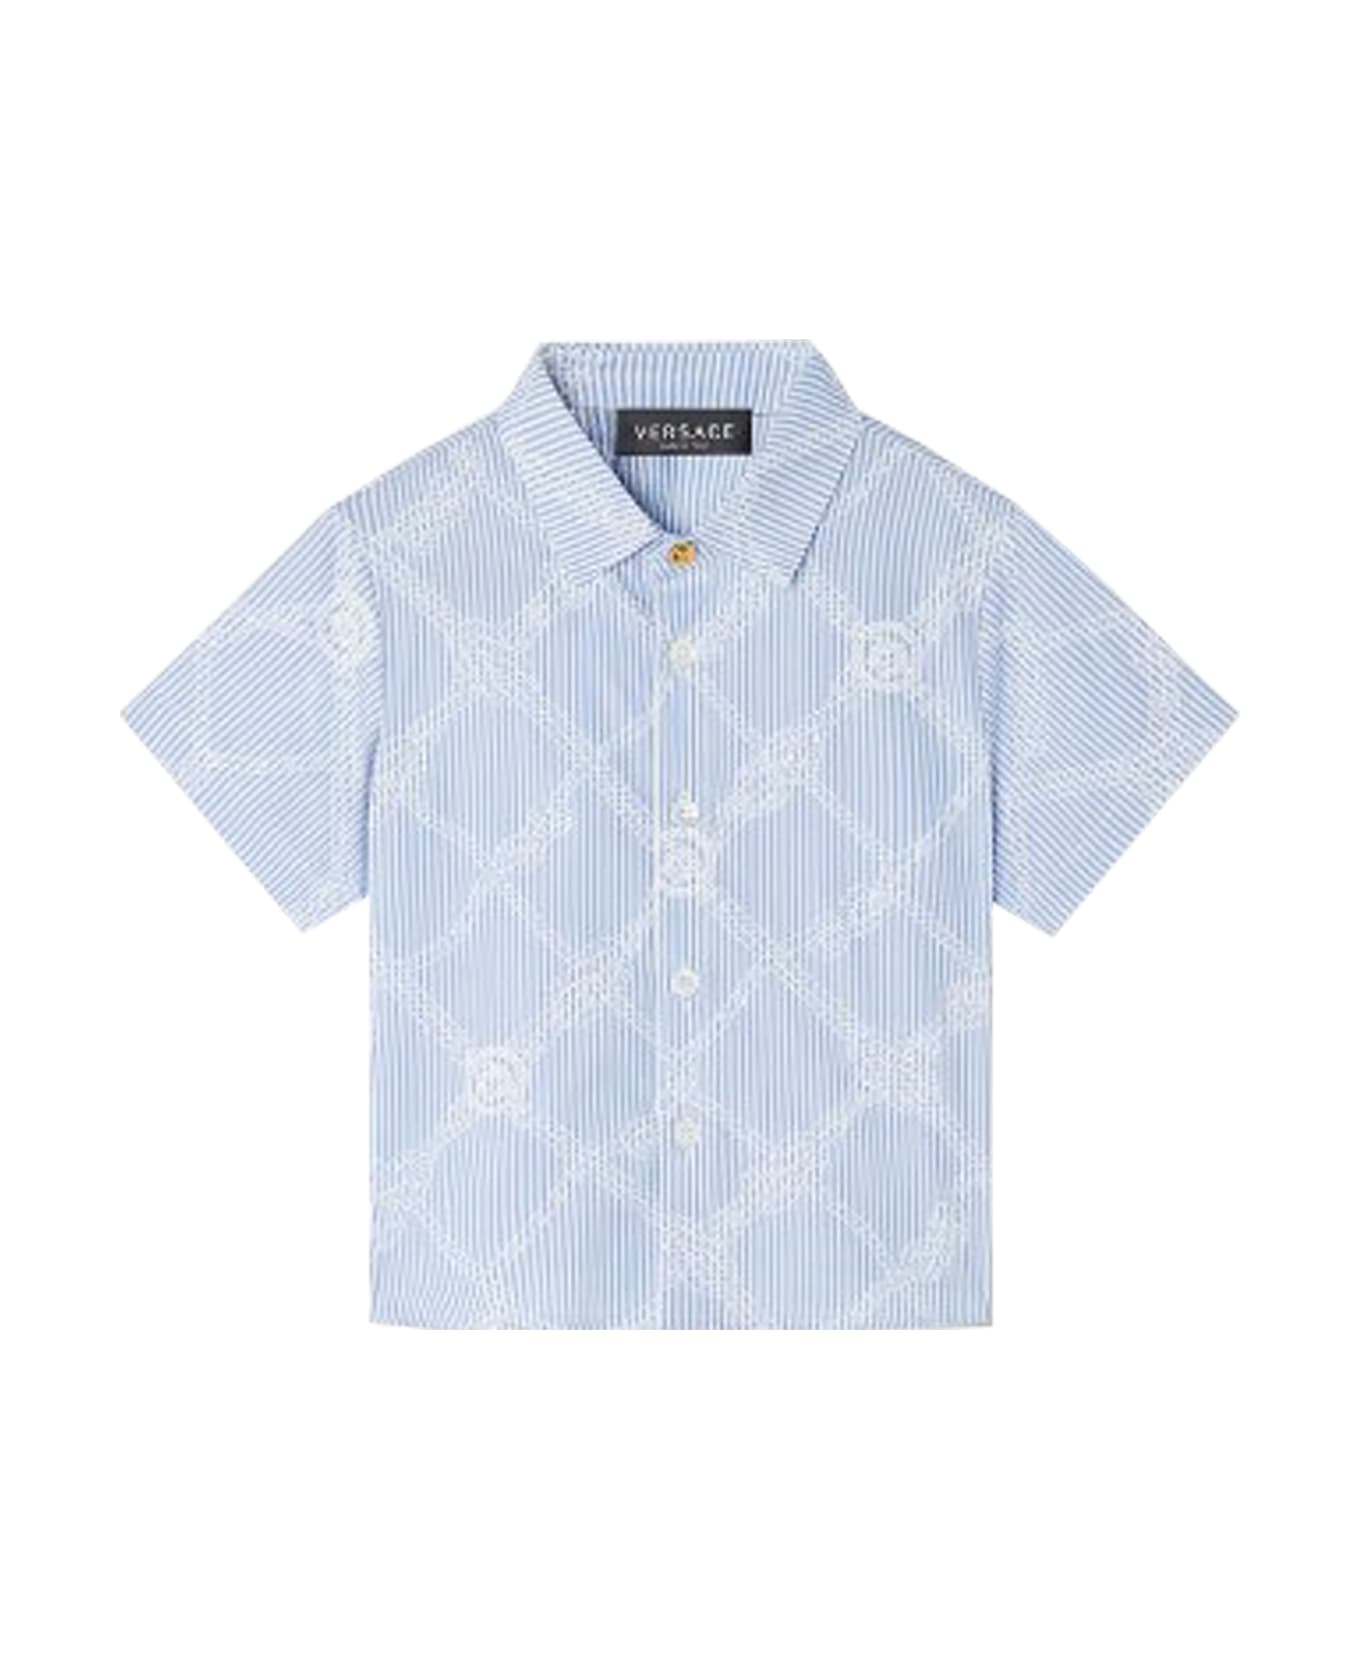 Versace Shirt - Heavenly シャツ